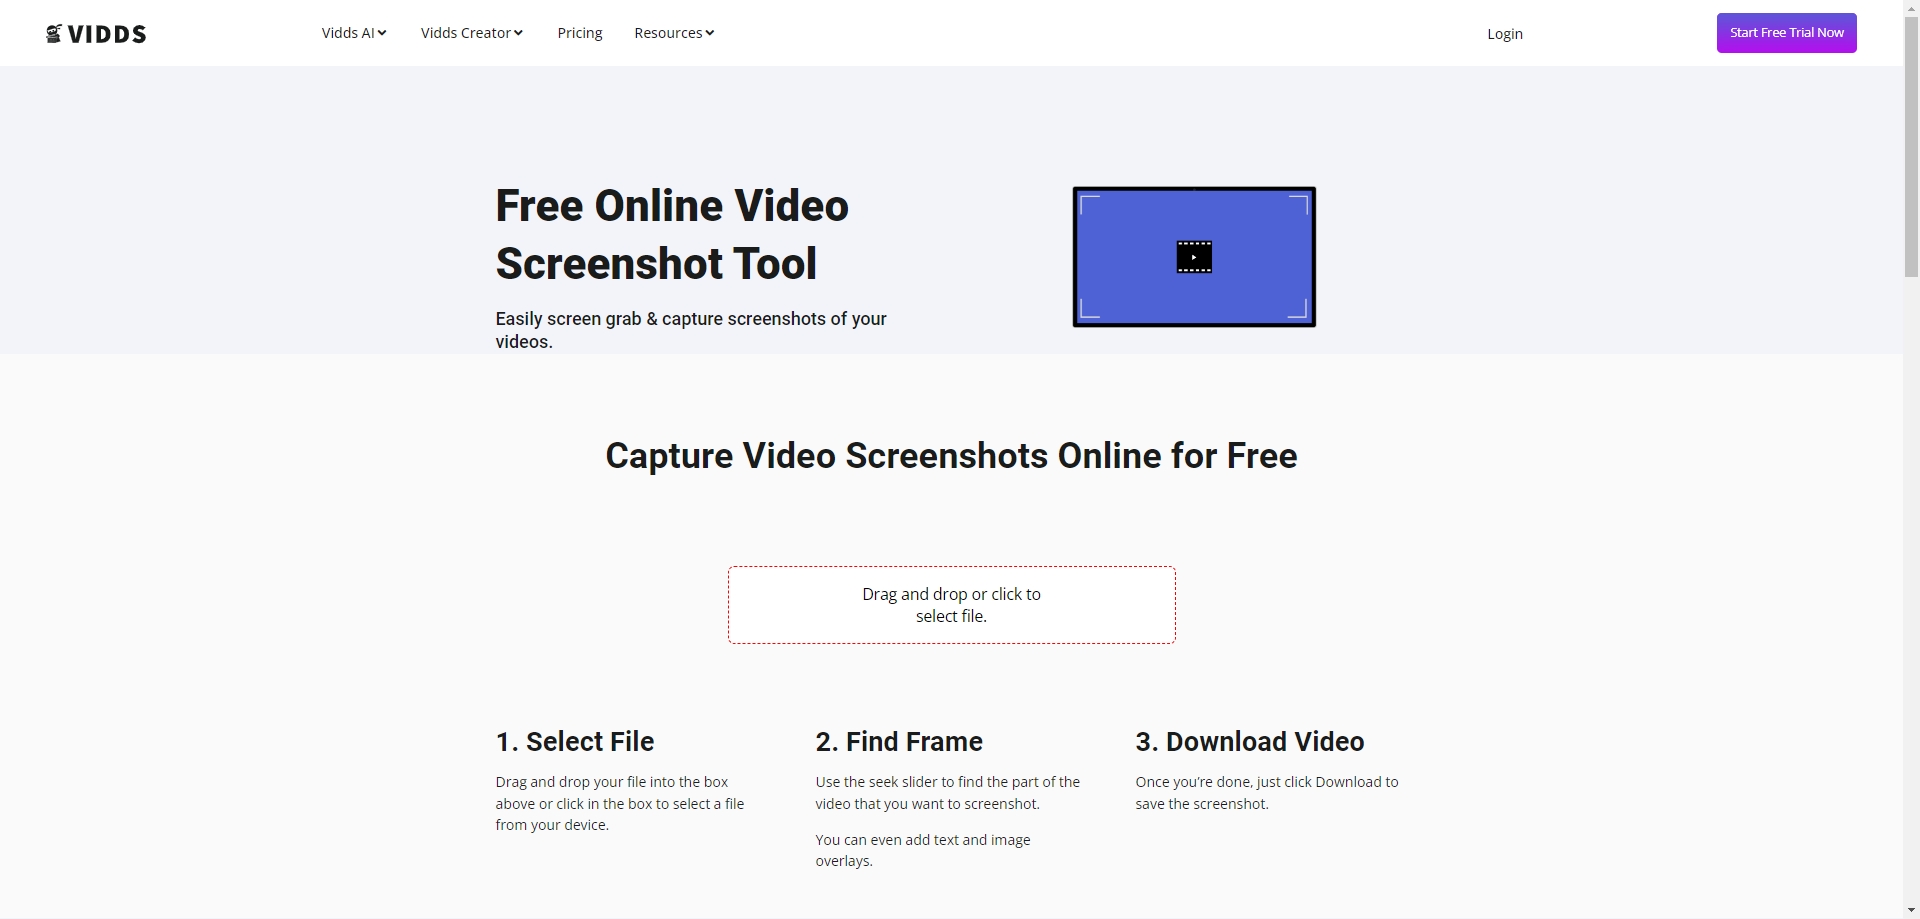 Vidds 무료 온라인 비디오 스크린샷 도구